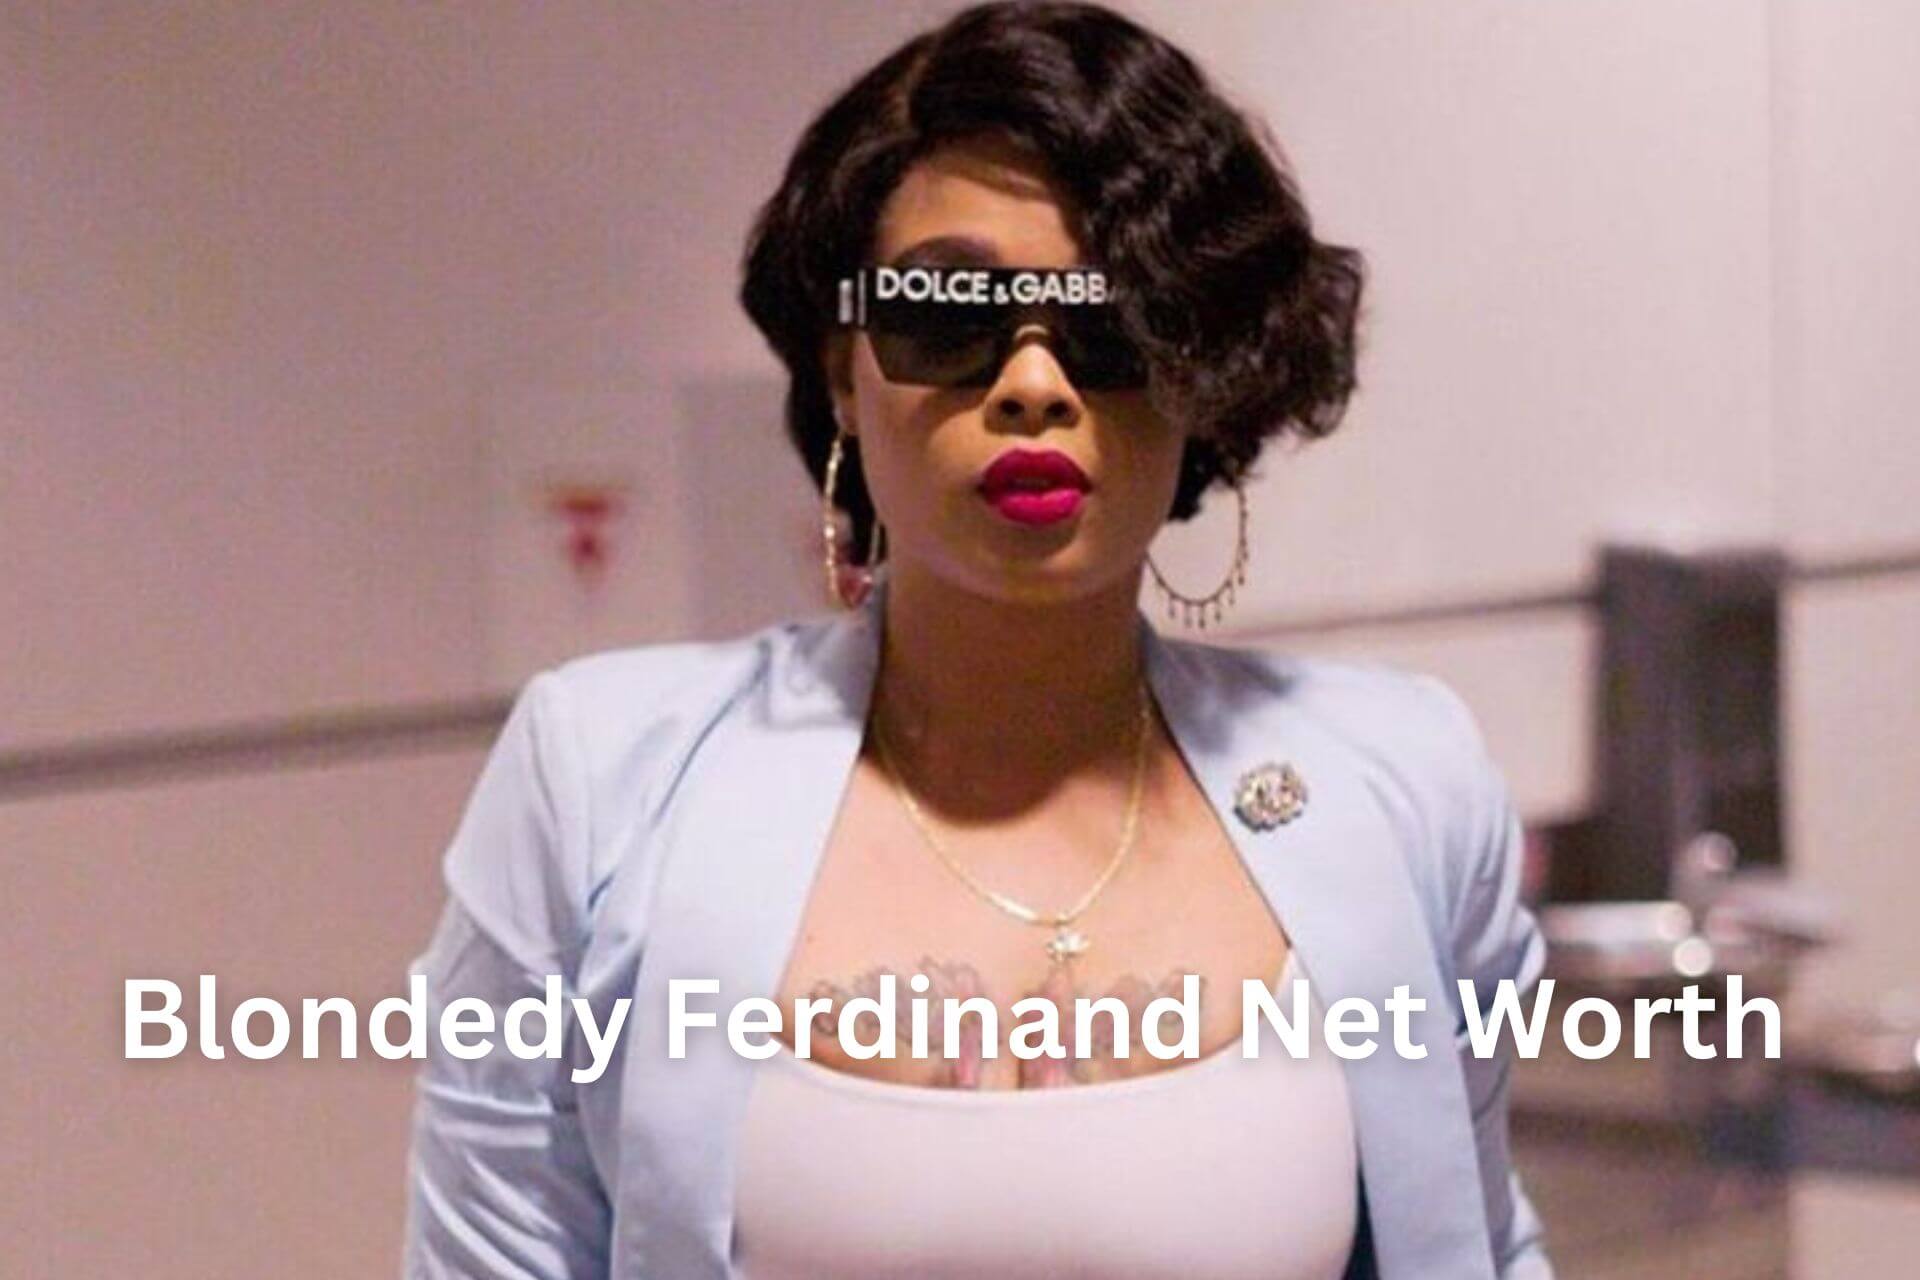 Blondedy Ferdinand Net Worth